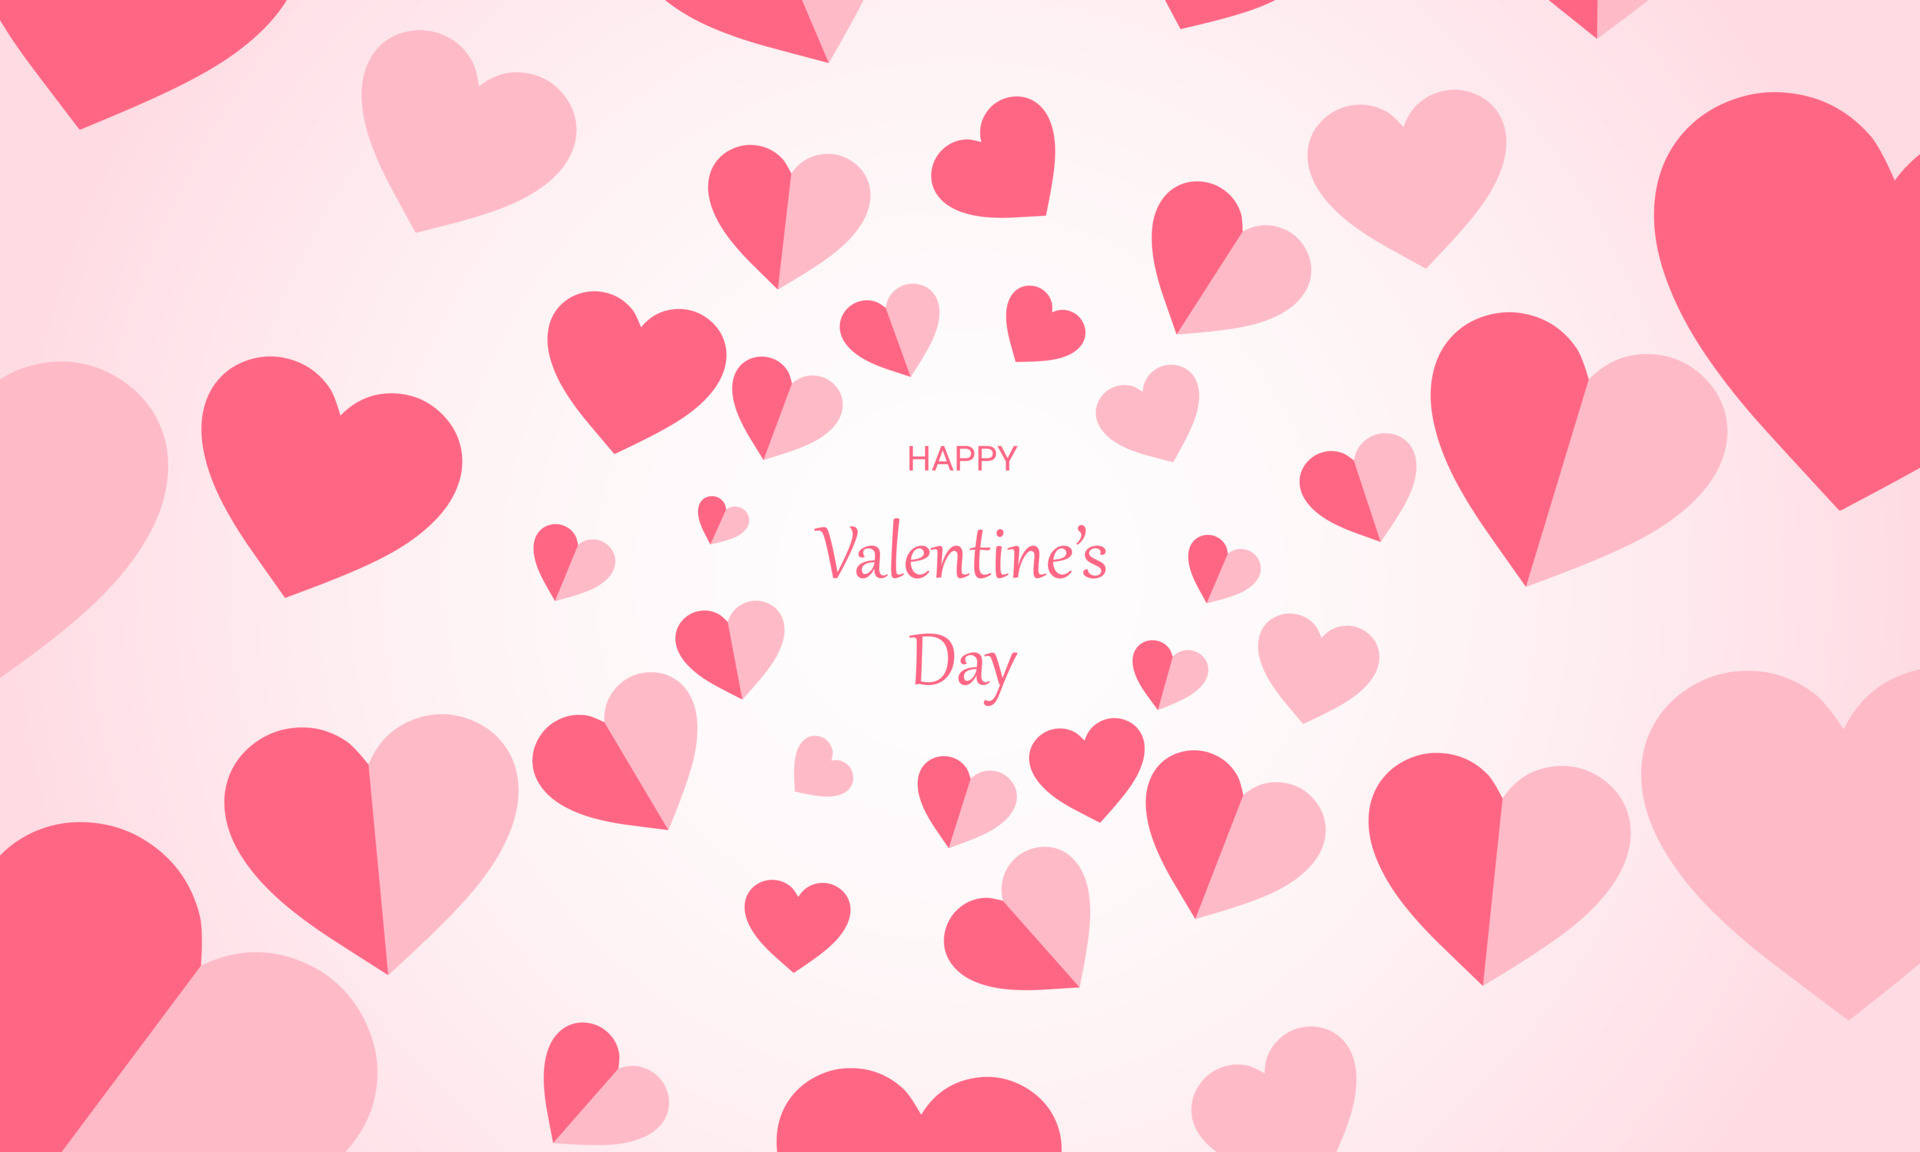 Lad dit hjerte komme til live denne Valentinsdag! Wallpaper